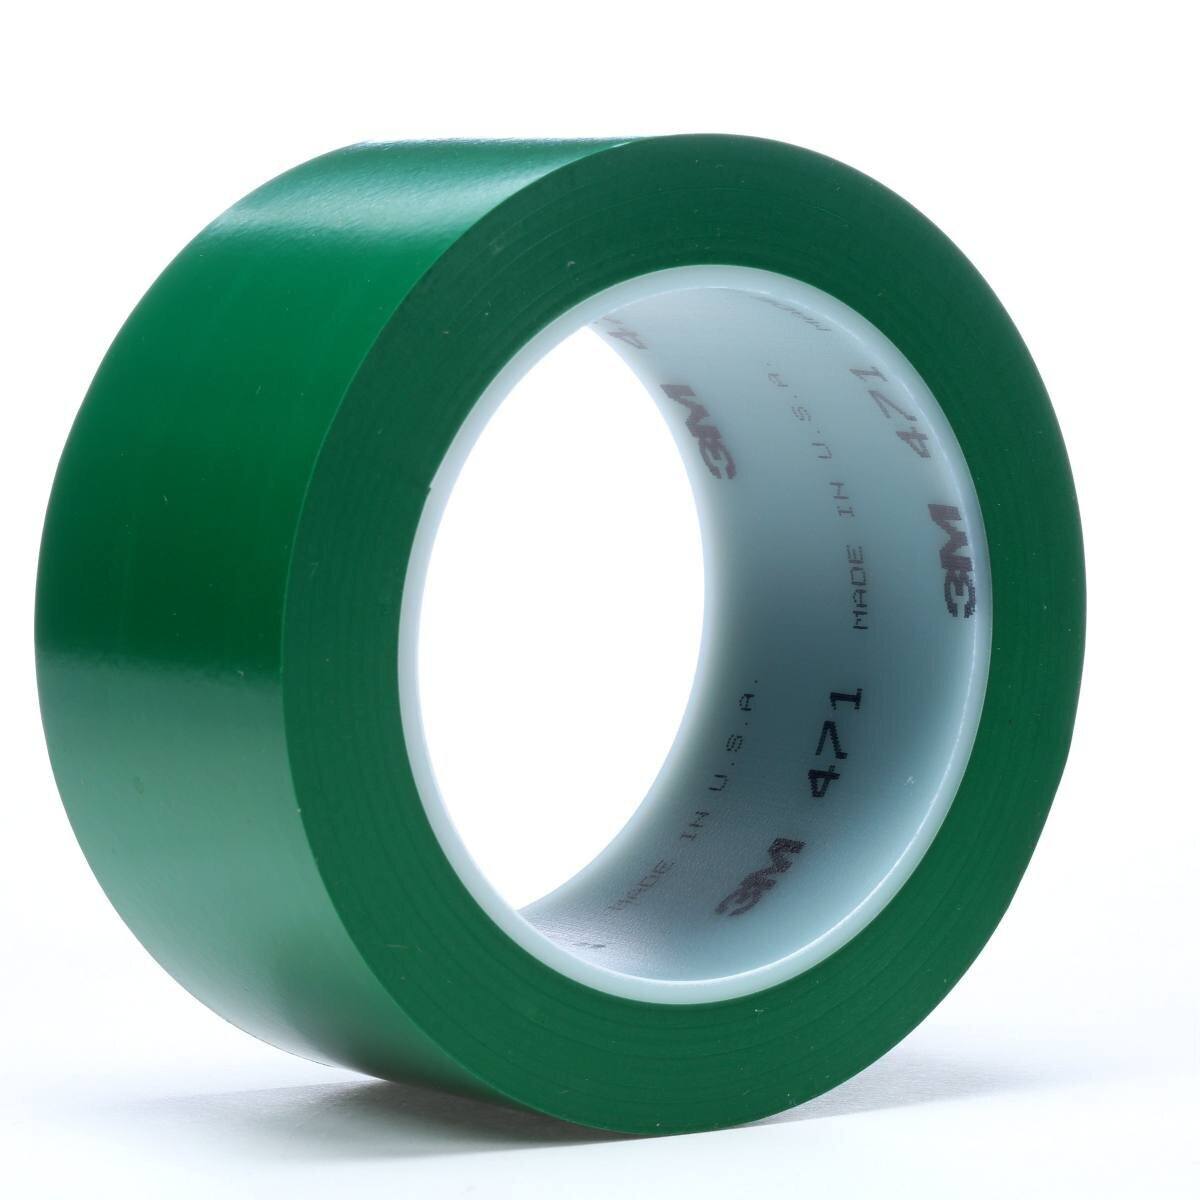 Cinta adhesiva de PVC blando 3M 471 F, verde, 50 mm x 33 m, 0,13 mm, embalada individualmente y de forma práctica